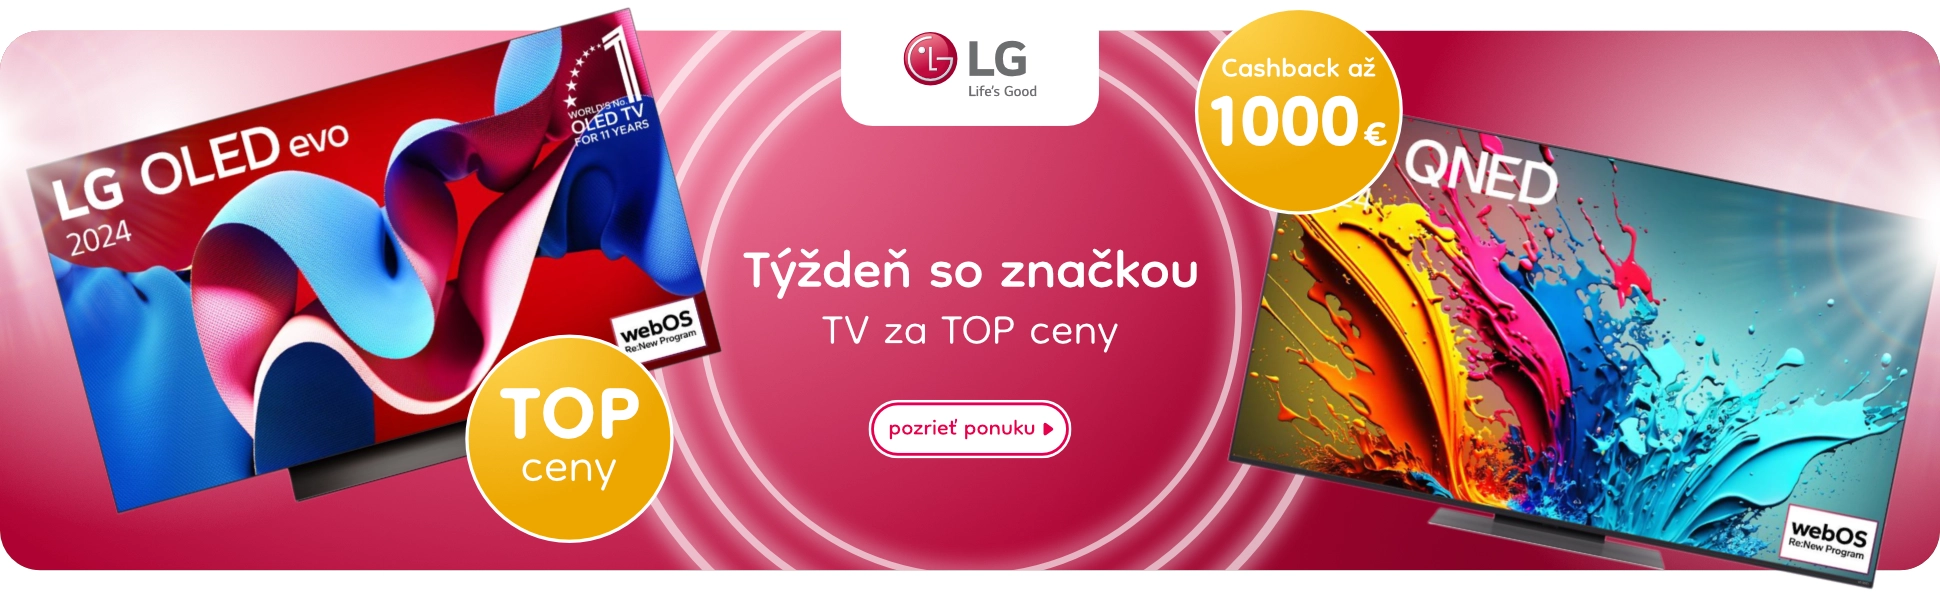 LG TV top ceny 2272872024